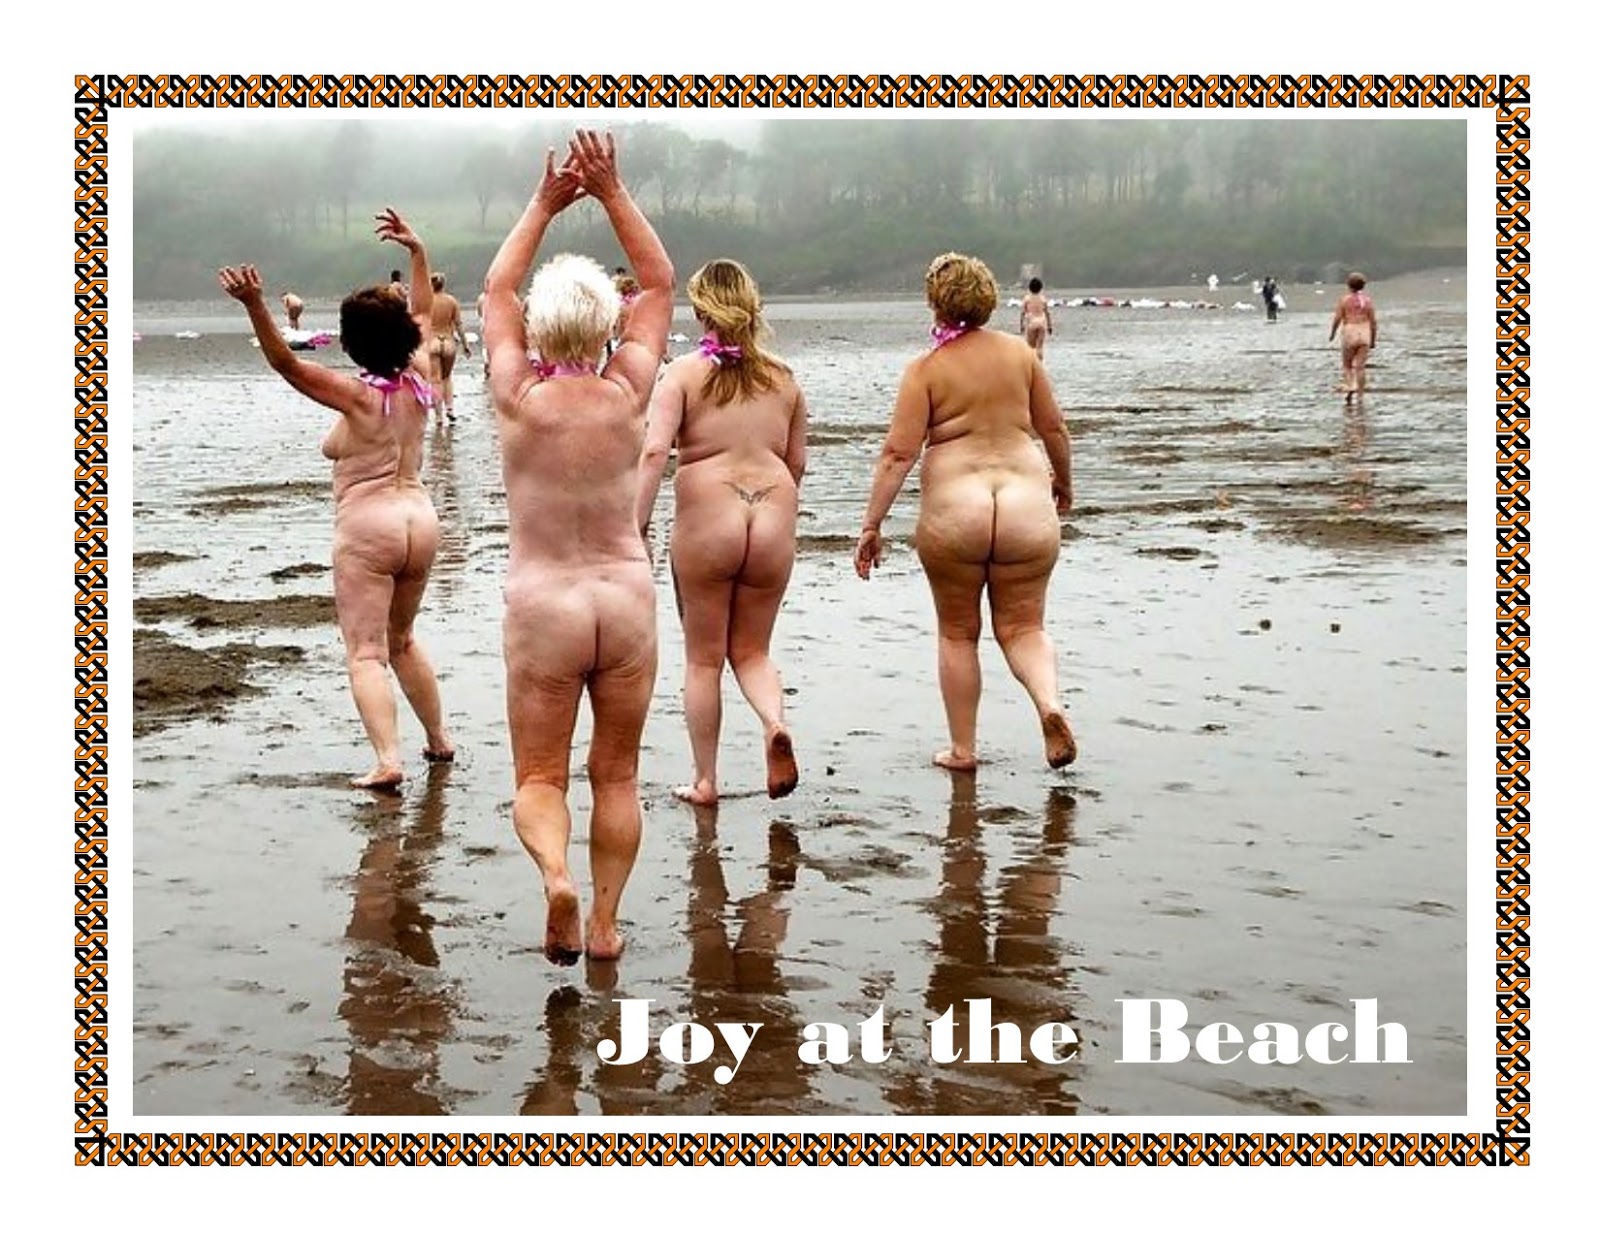 купаются на пляже голыми фото 32